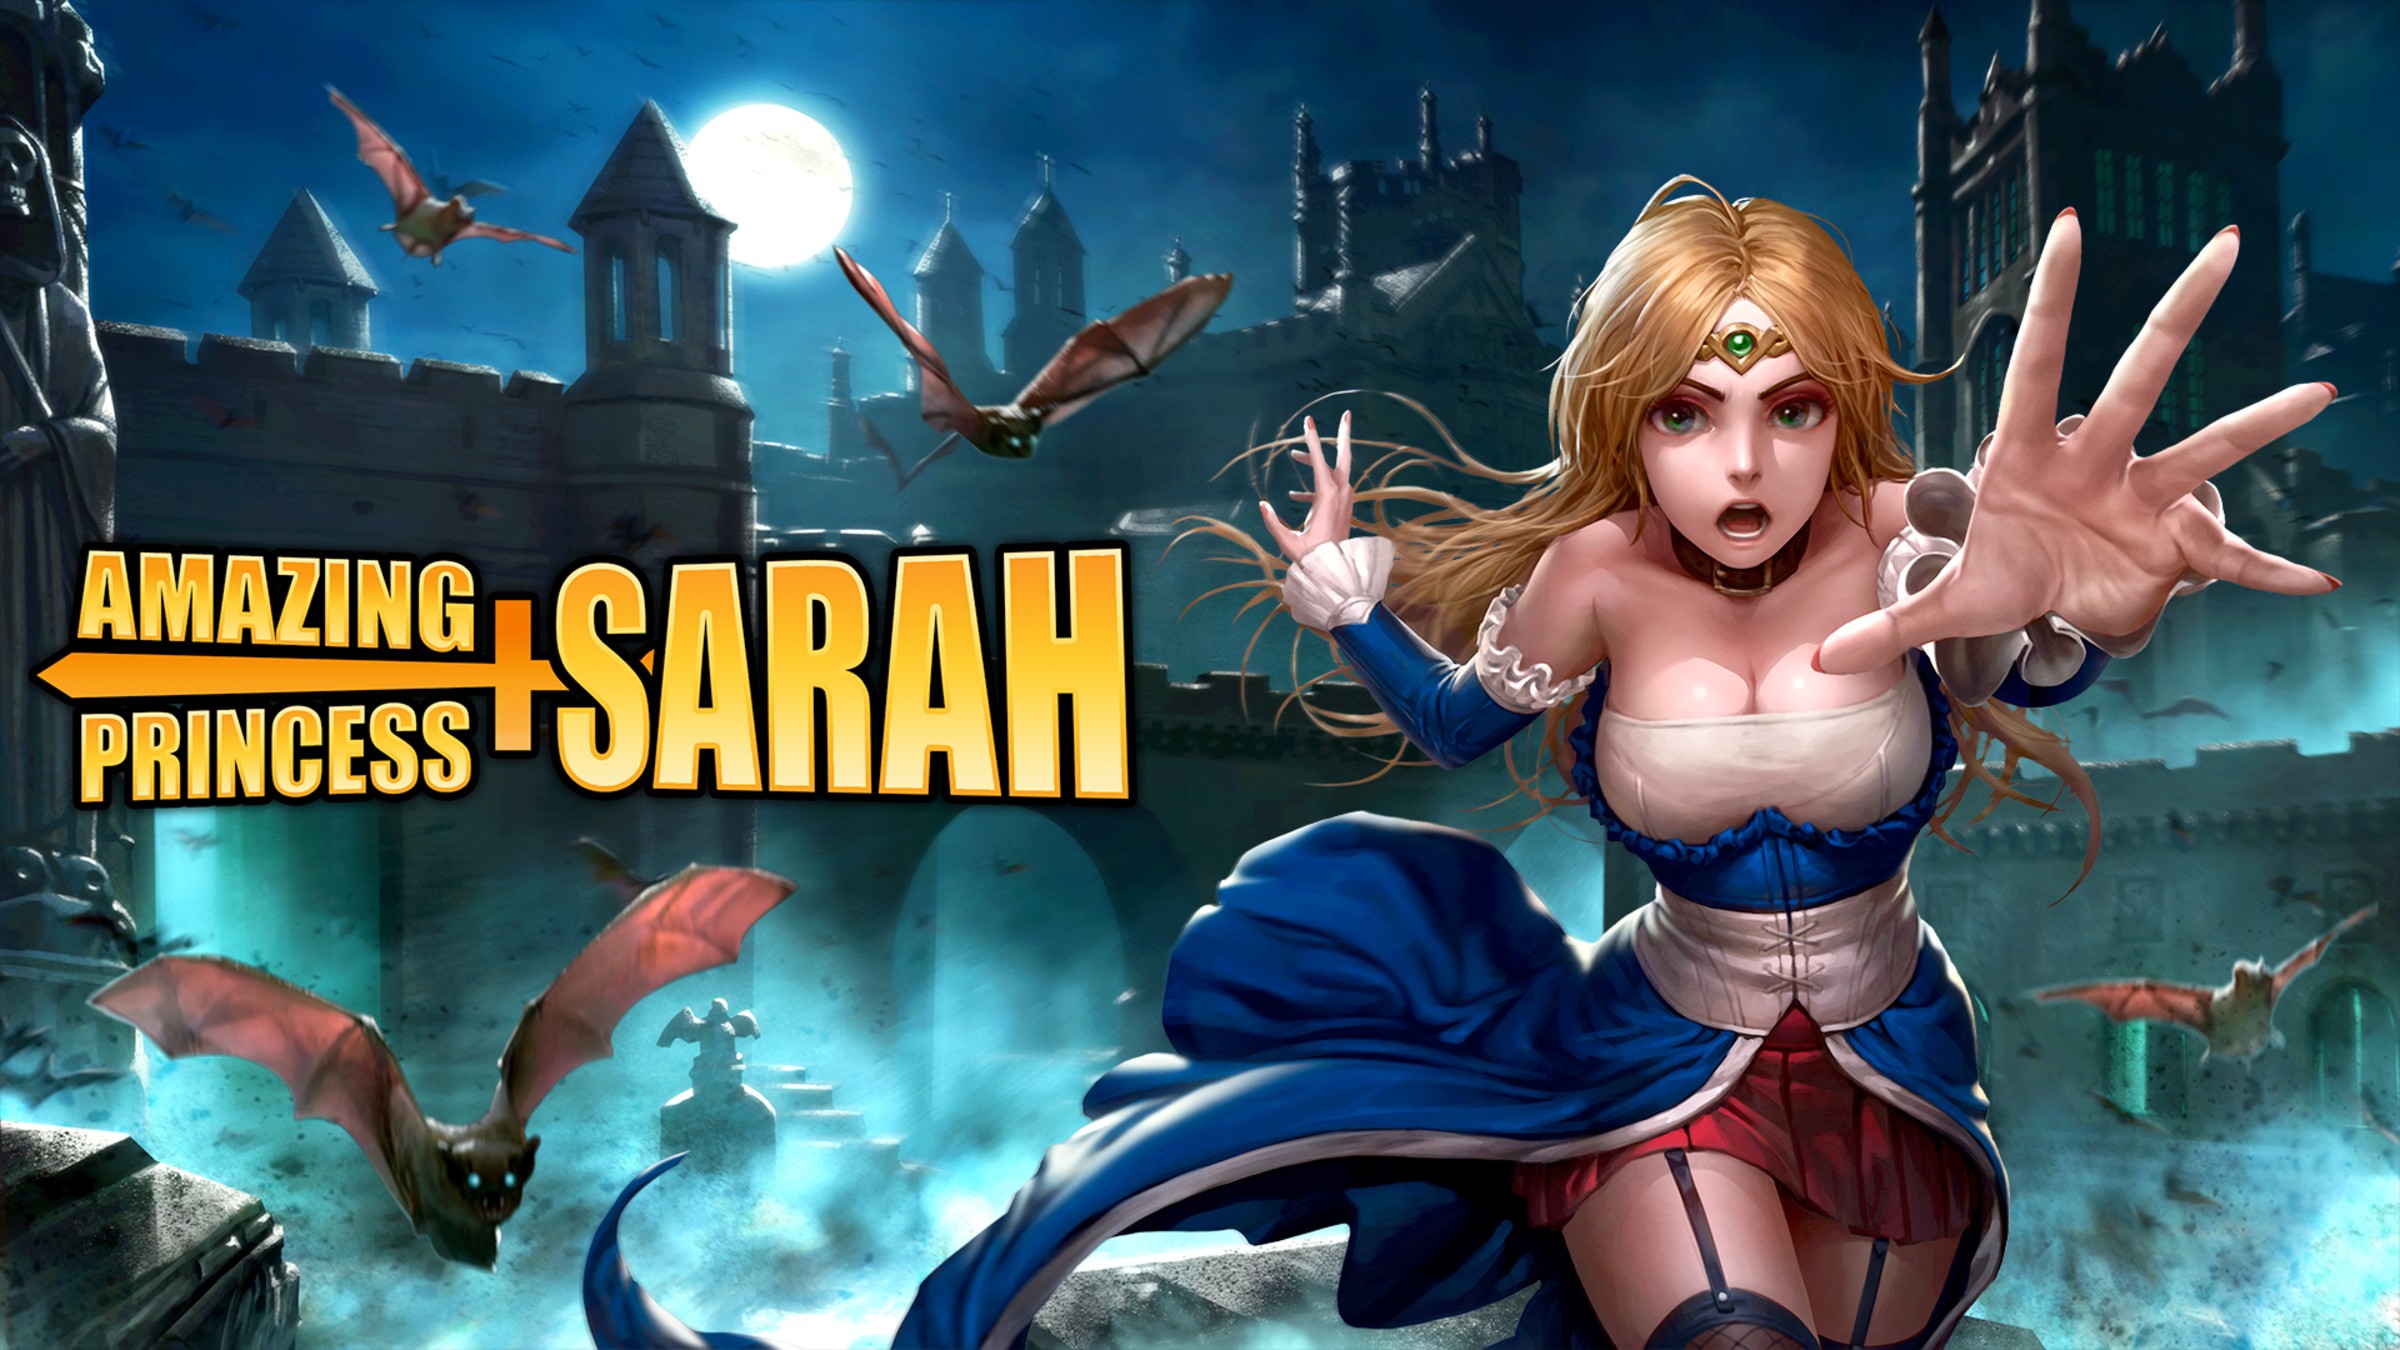 Amazing Princess Sarah for Nintendo Switch - Nintendo Official Site